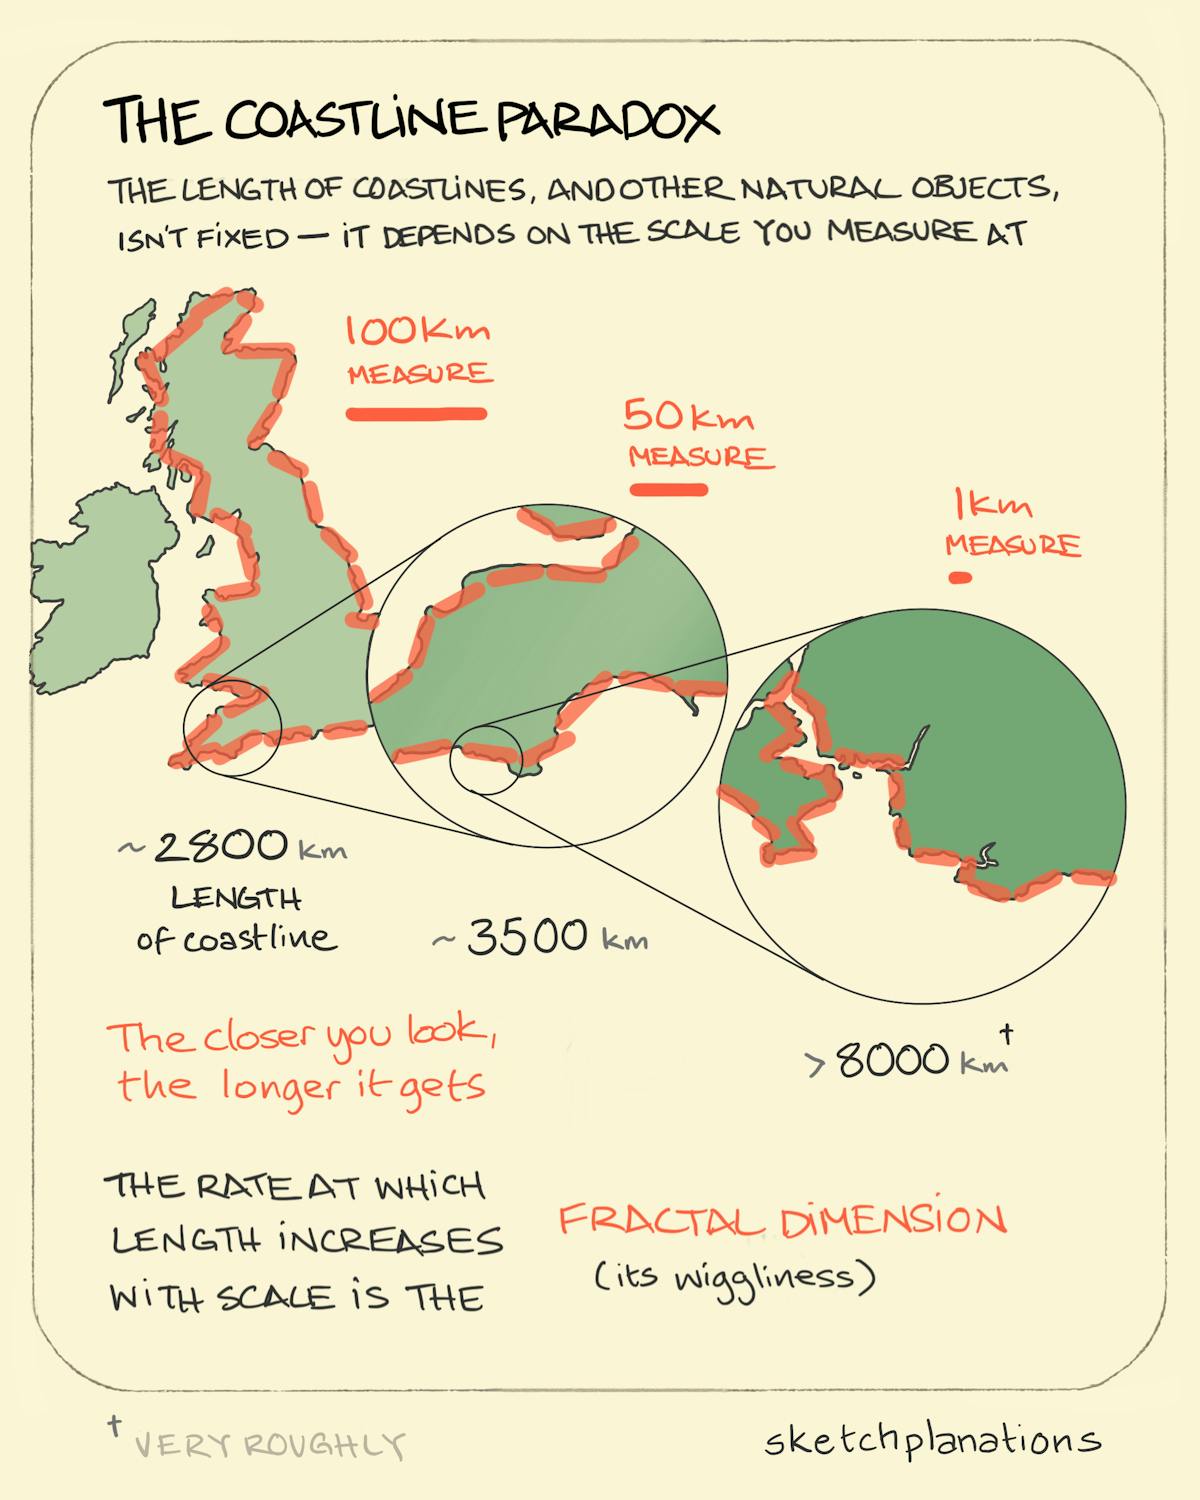 The coastline paradox - Sketchplanations